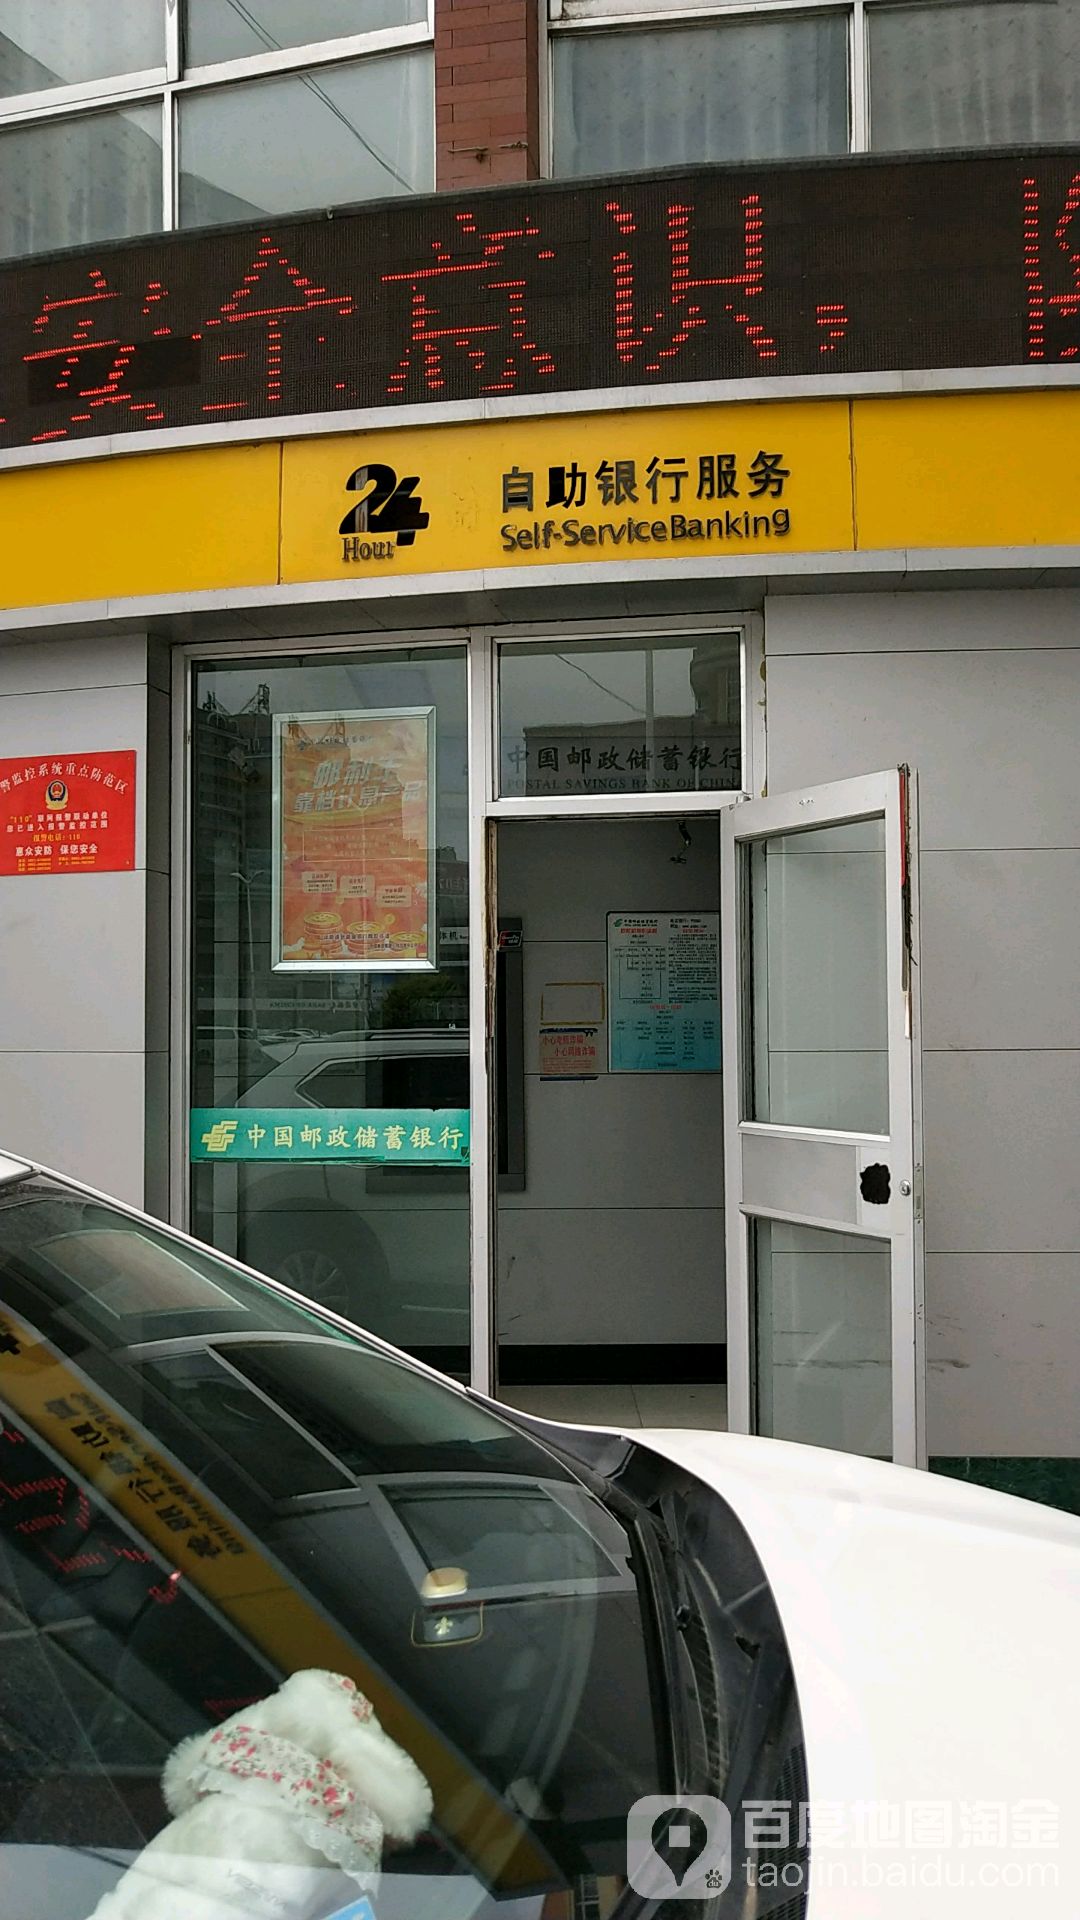 中國郵政儲蓄銀行24小時自助銀行(石嘴山市春暉支行)